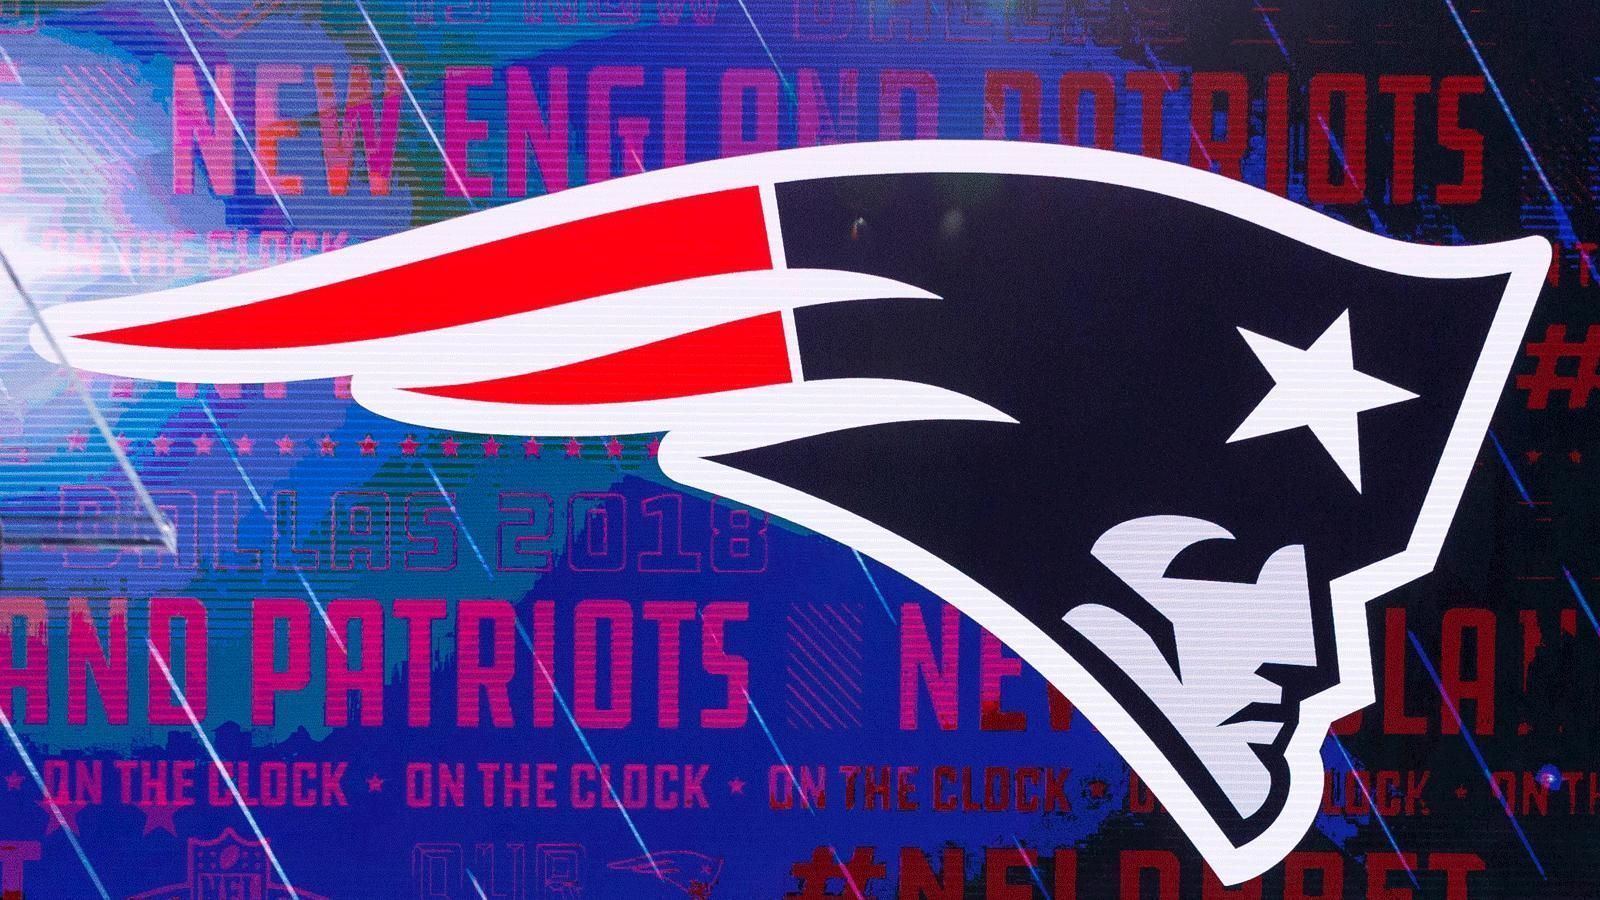 
                <strong>New England Patriots</strong><br>
                Das ursprünglich in Boston beheimatete Football-Team wurde wegen seines kulturellen Erbes als Geburtsort der amerikanischen Revolution zum Patrioten ernannt. Fans wählten den Namen in Anlehnung an die Zeichentrick-Figur "Pat Patriot".
              